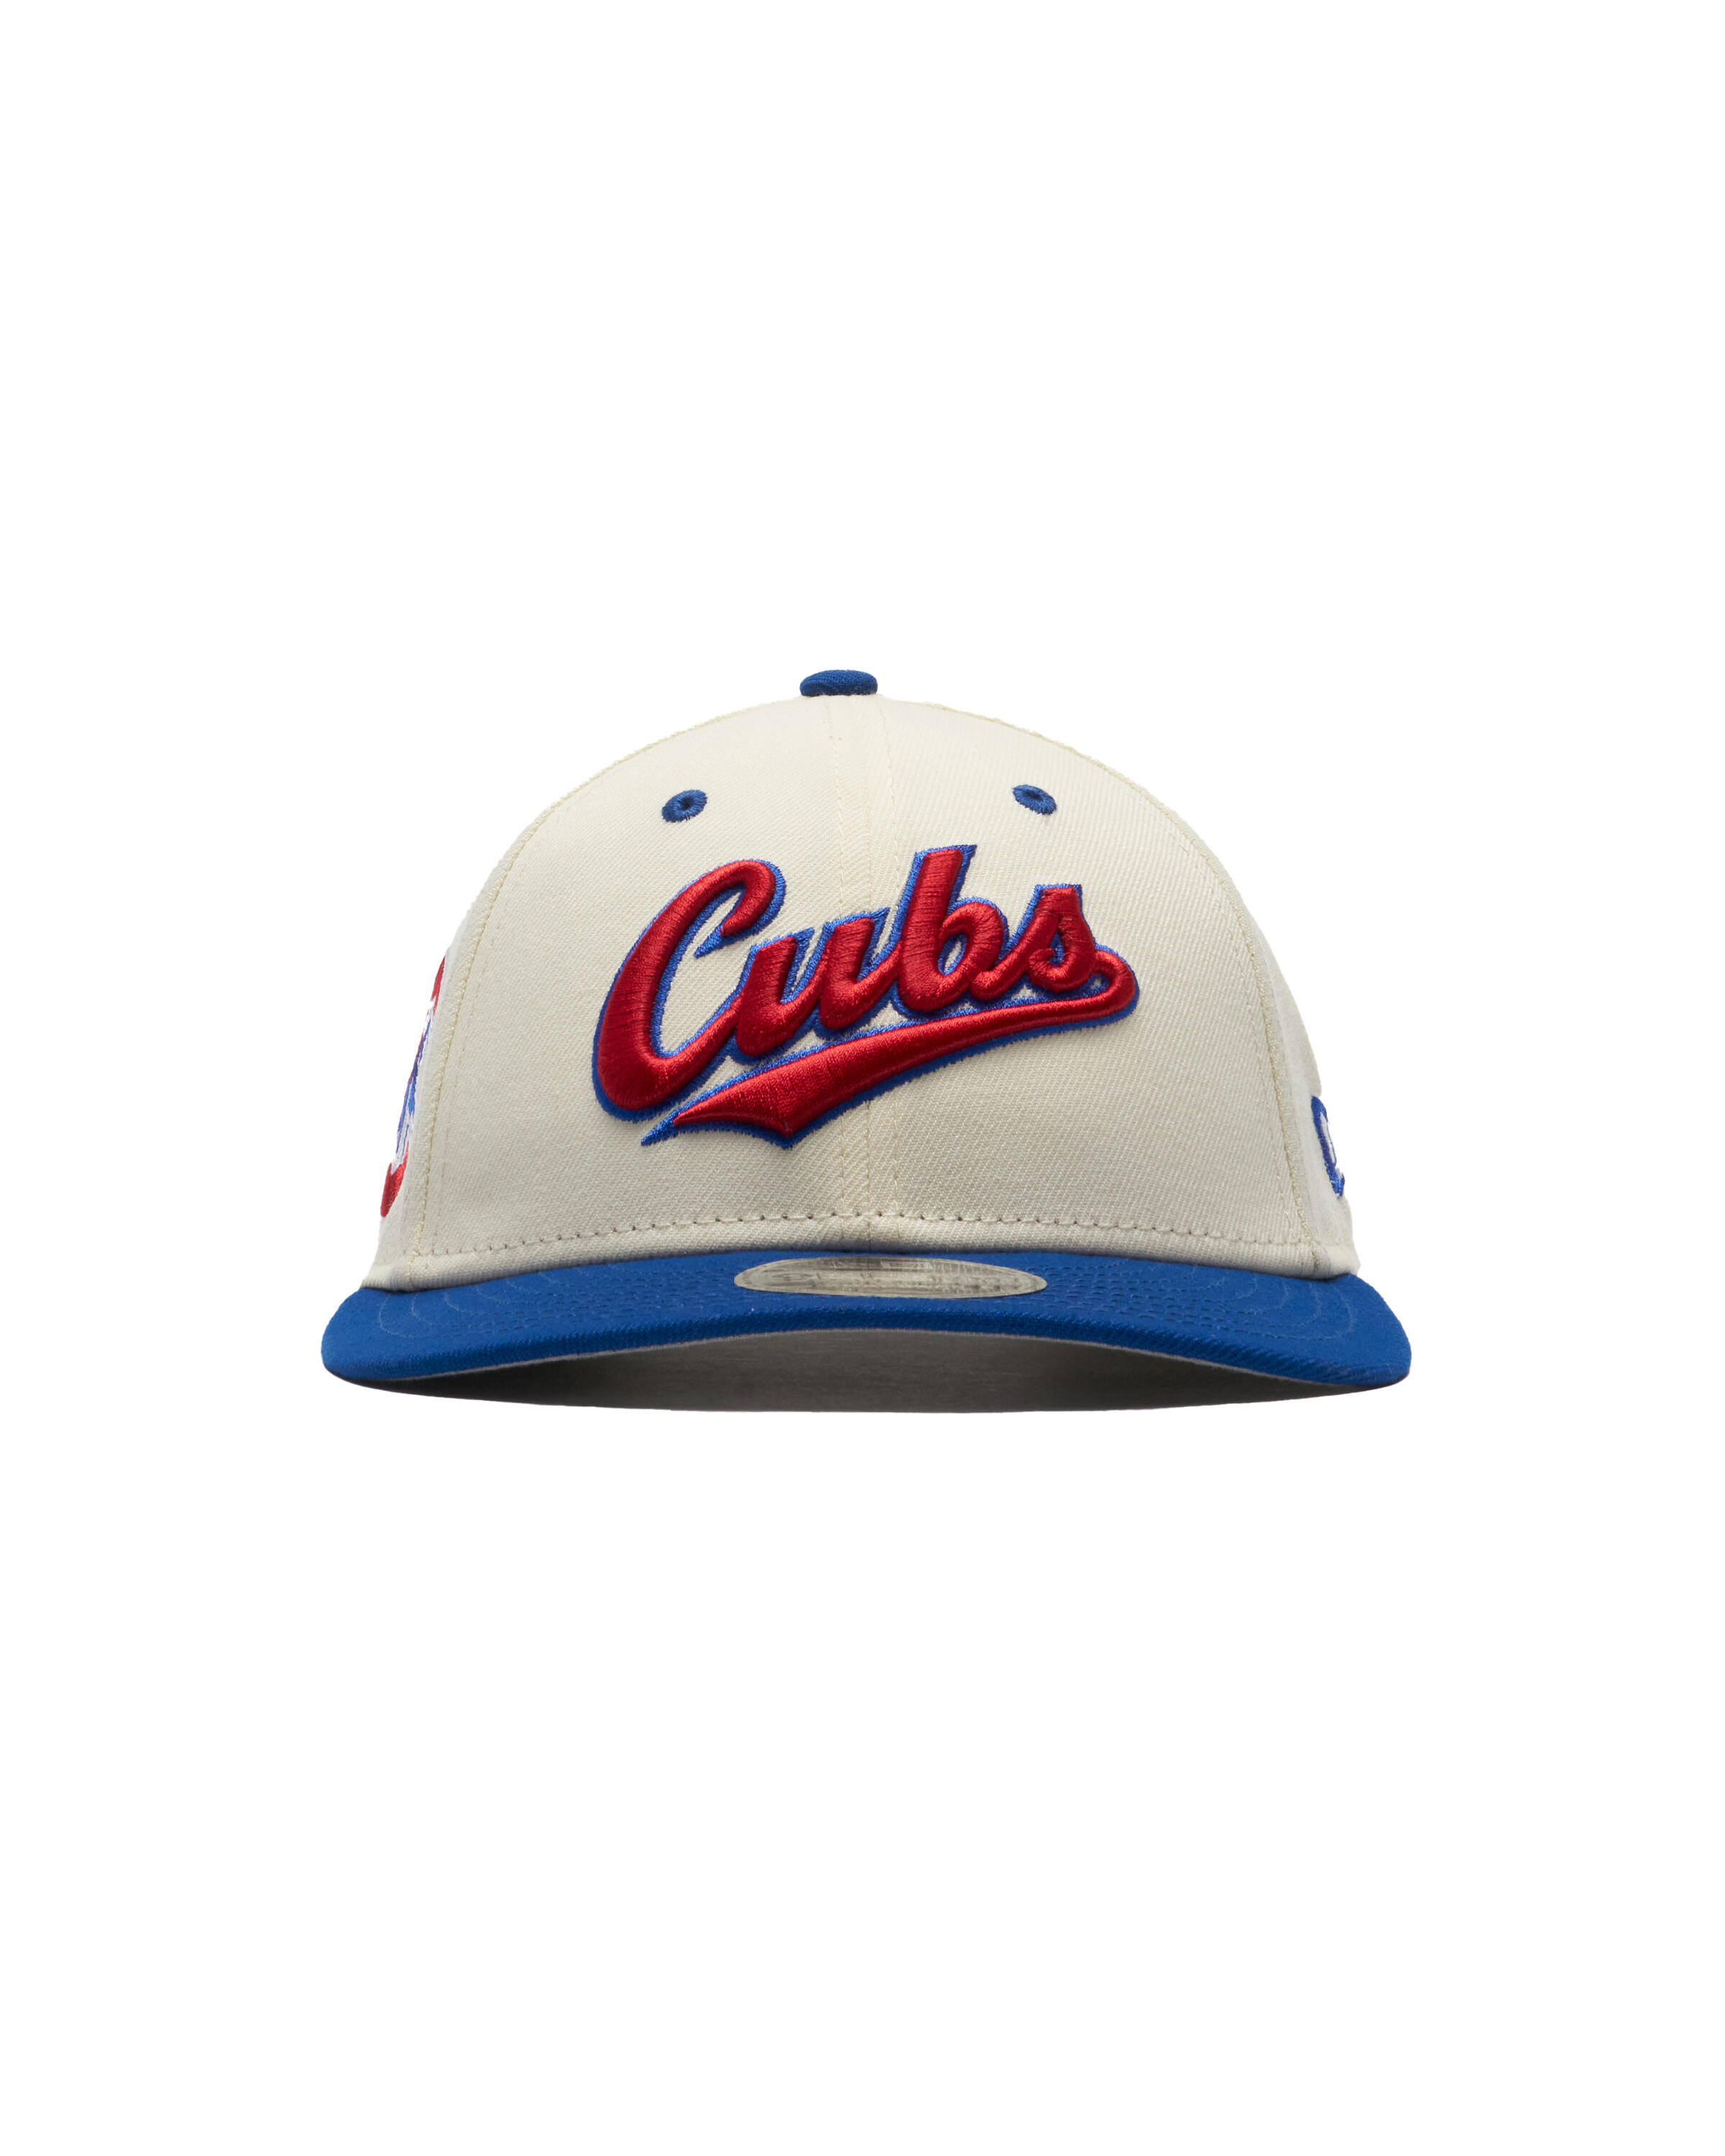 New Era x FELT 9FIFTY Cap 'Chicago Cubs'